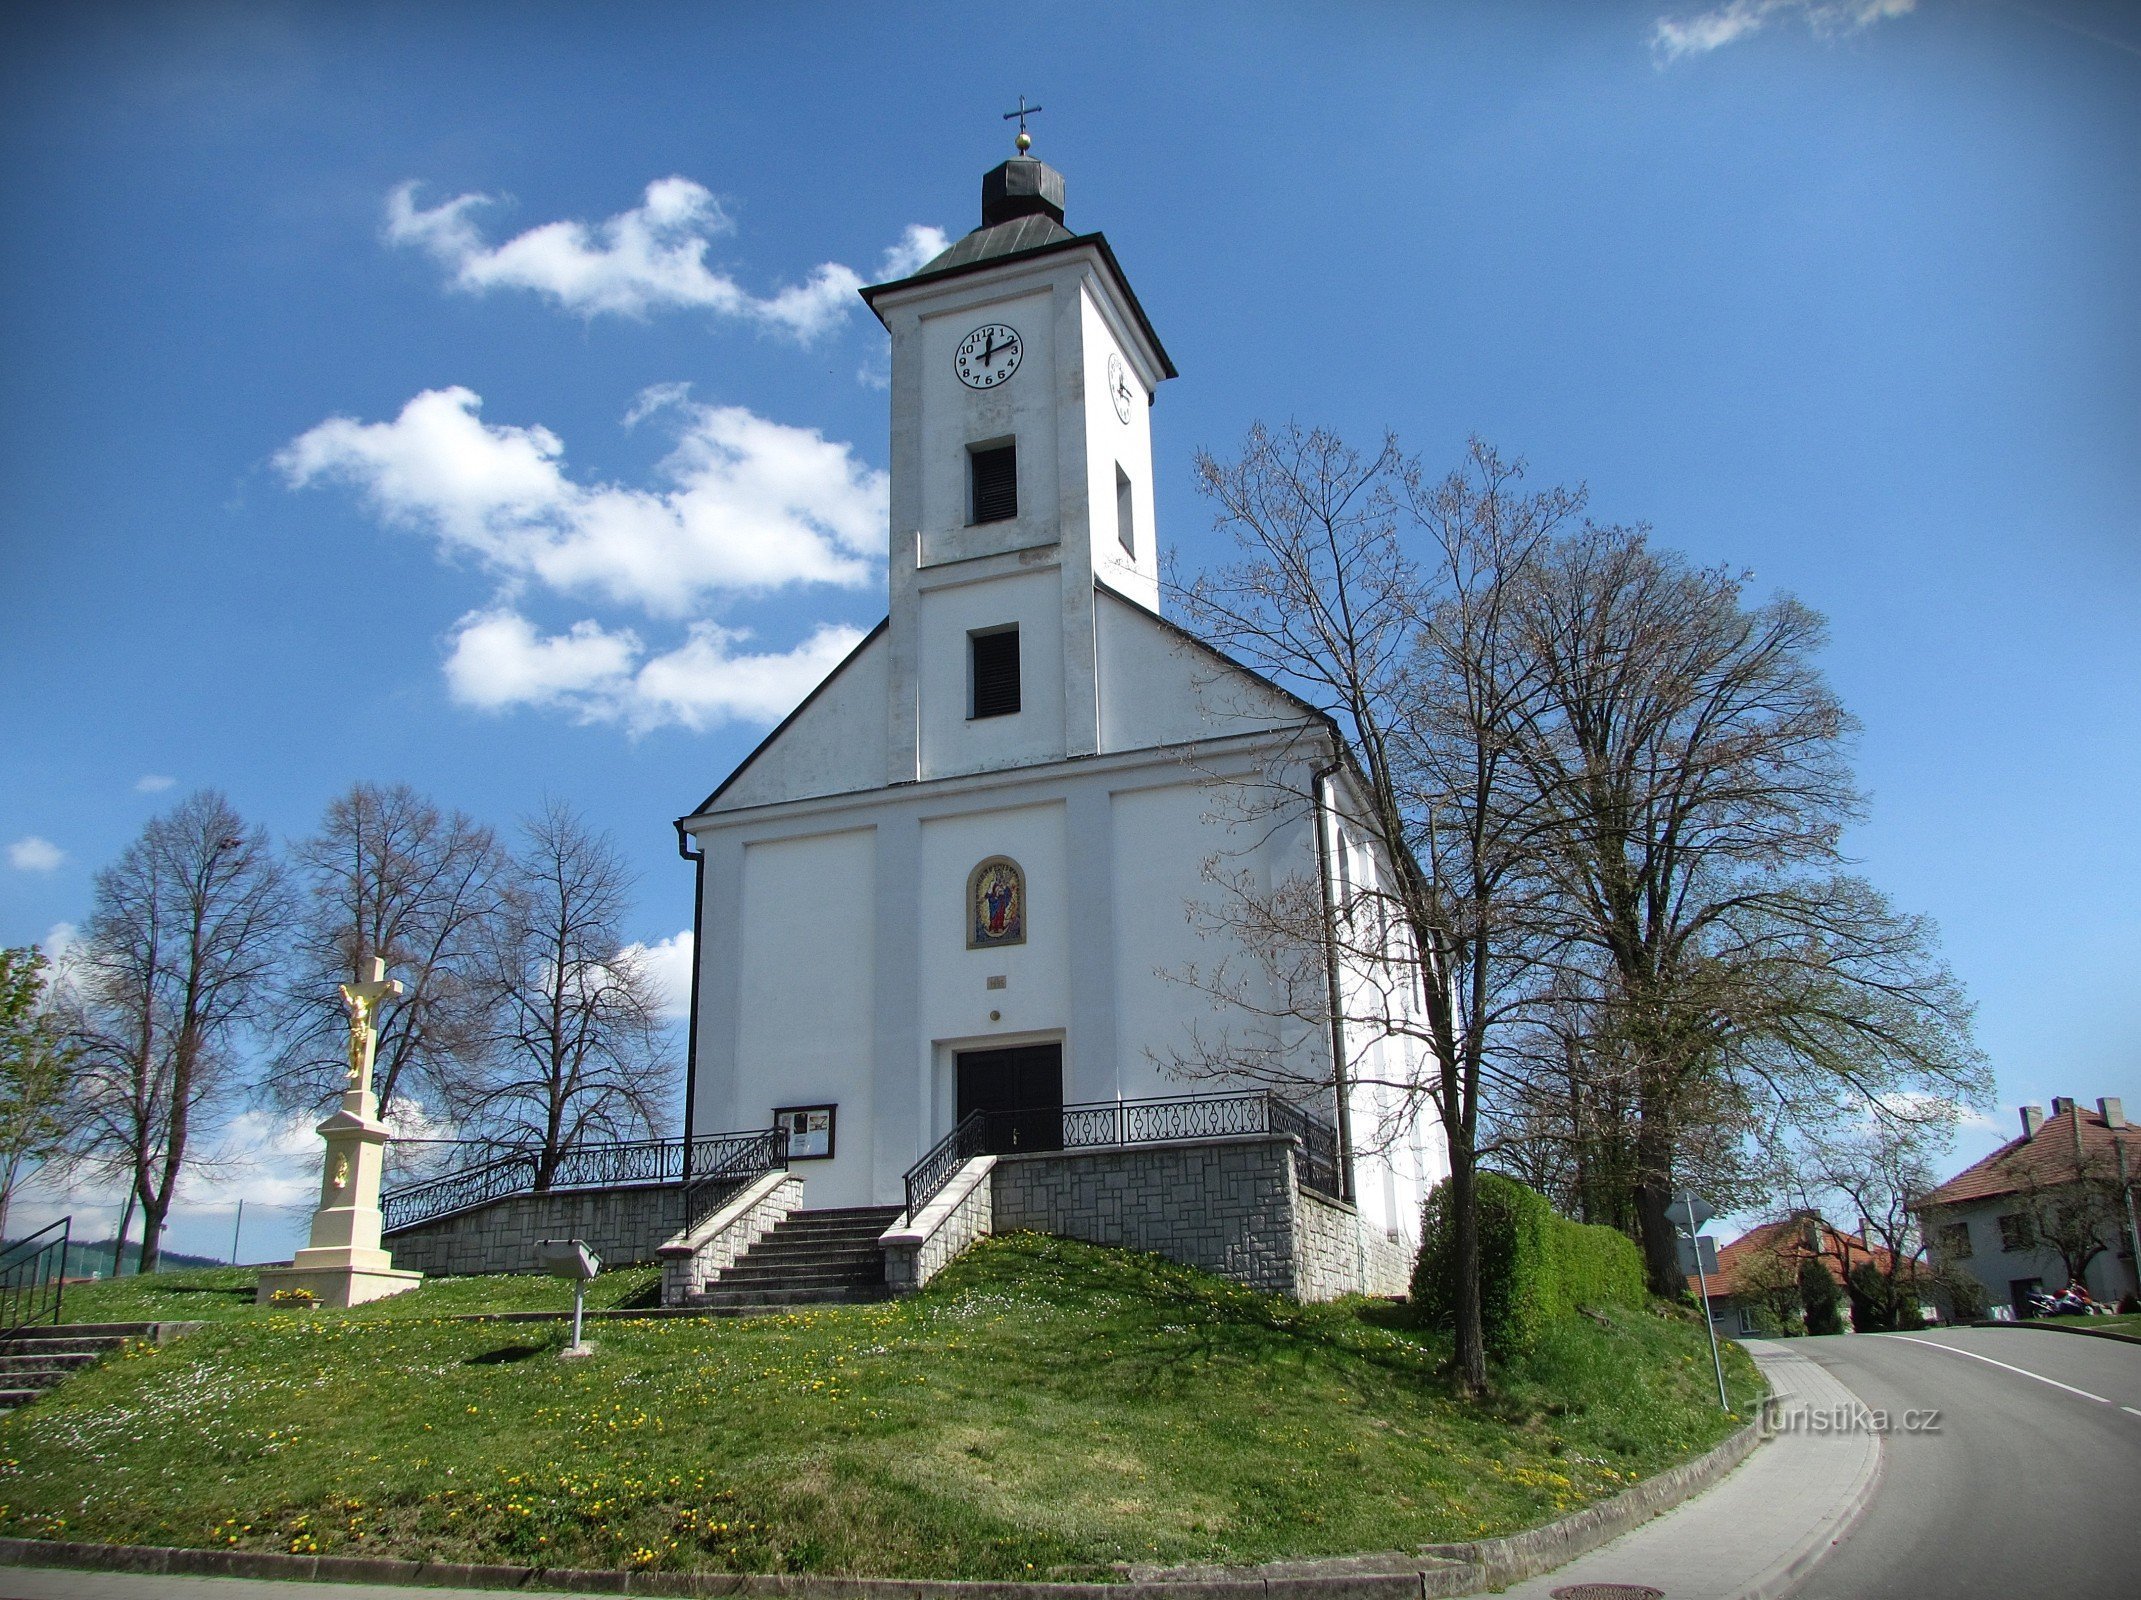 Slopné - Kirche St. Rochus